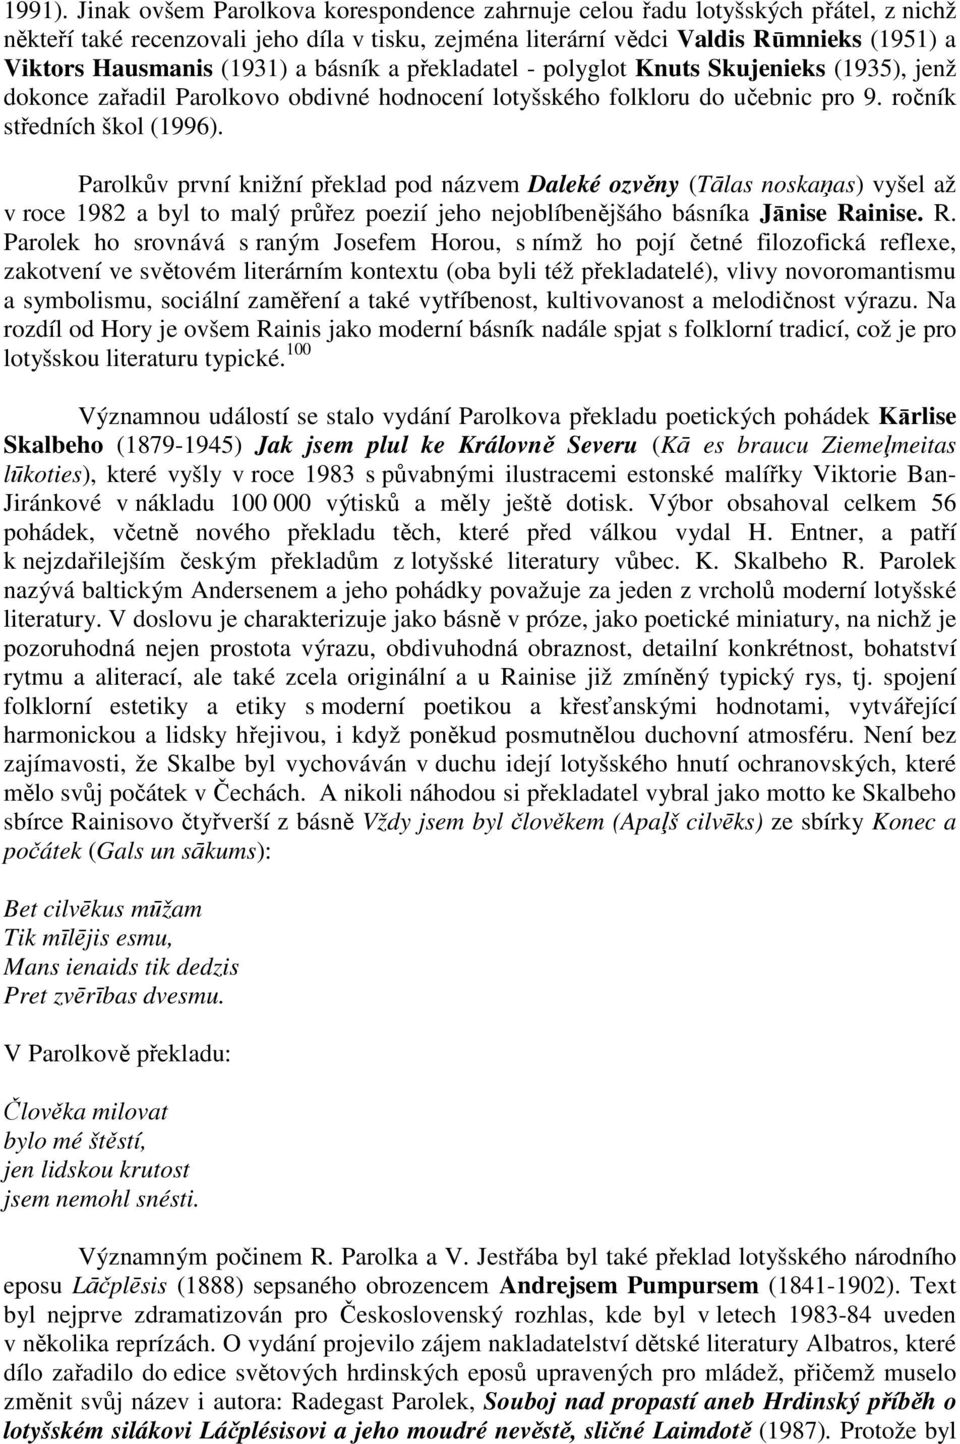 (1931) a básník a překladatel - polyglot Knuts Skujenieks (1935), jenž dokonce zařadil Parolkovo obdivné hodnocení lotyšského folkloru do učebnic pro 9. ročník středních škol (1996).